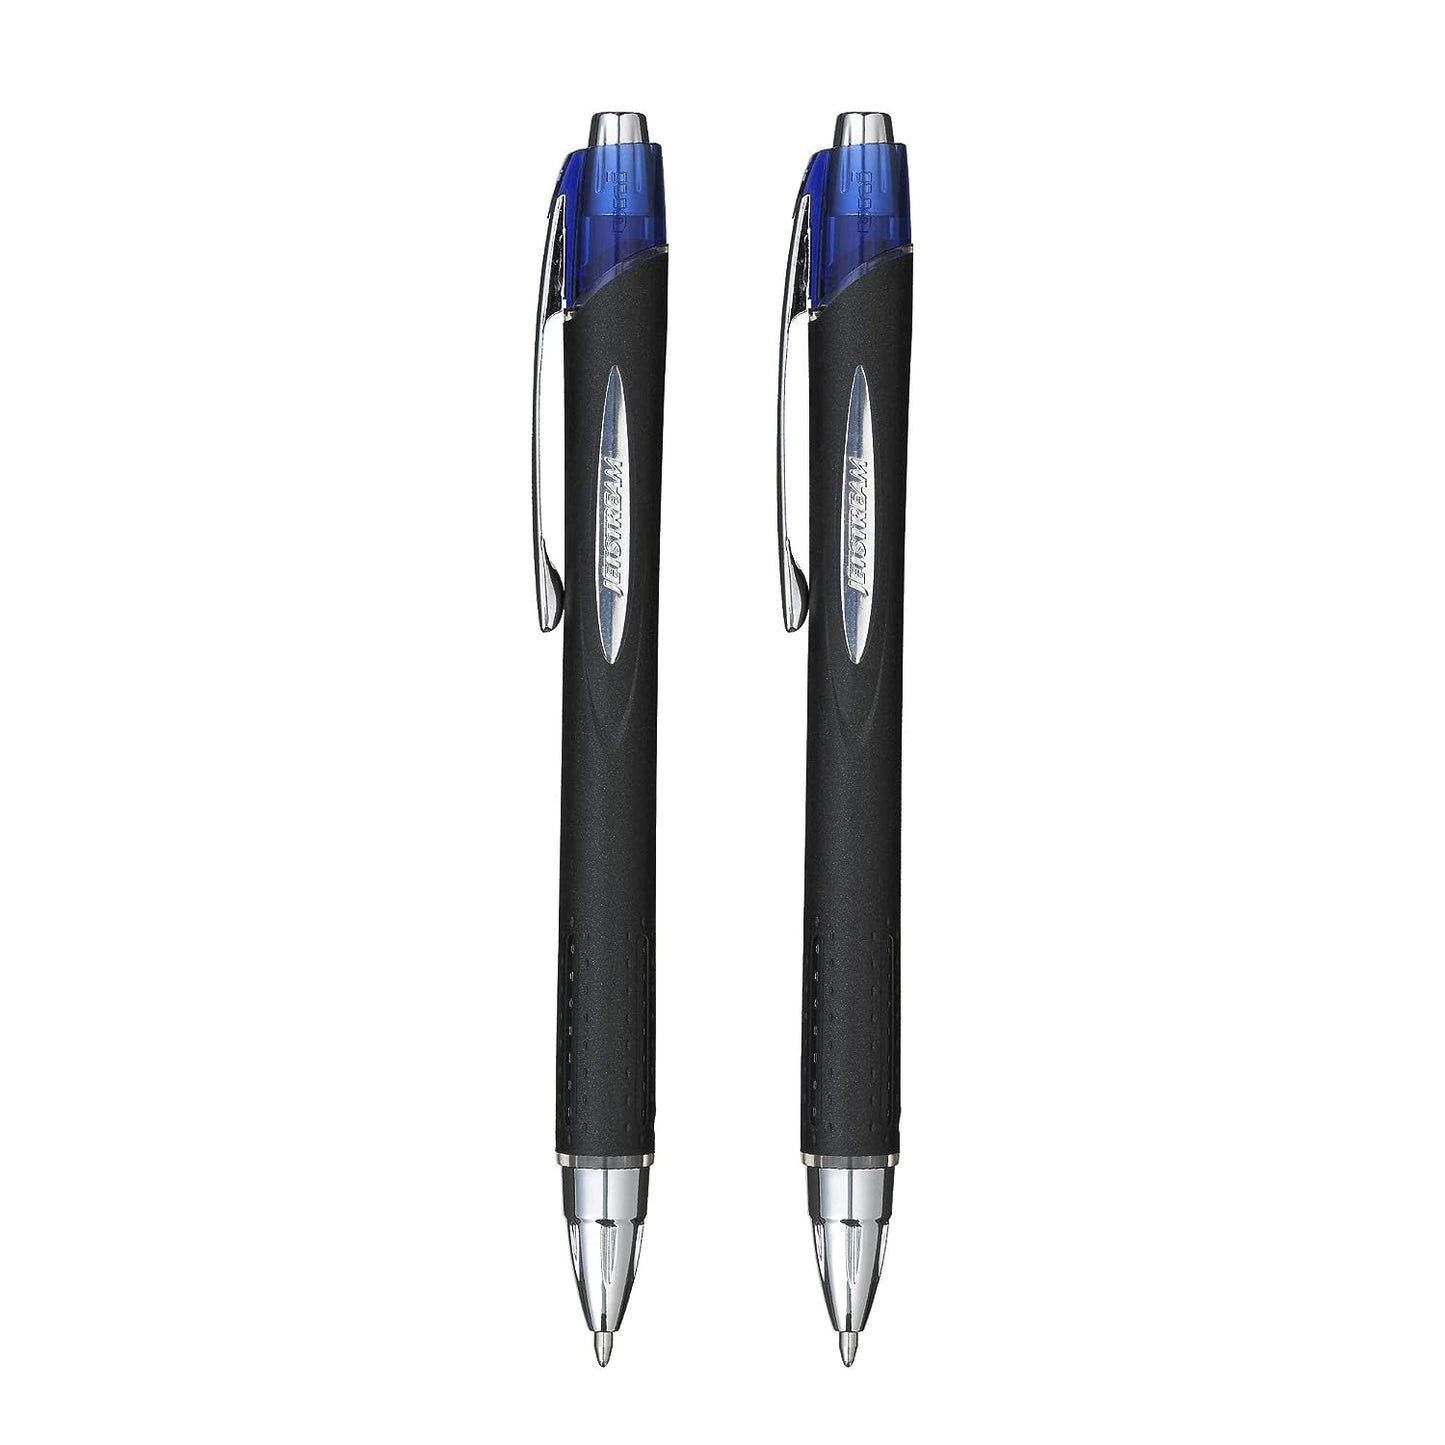 UniBall Jetstream Sxn210 Roller Ball Pen - Blue Ink